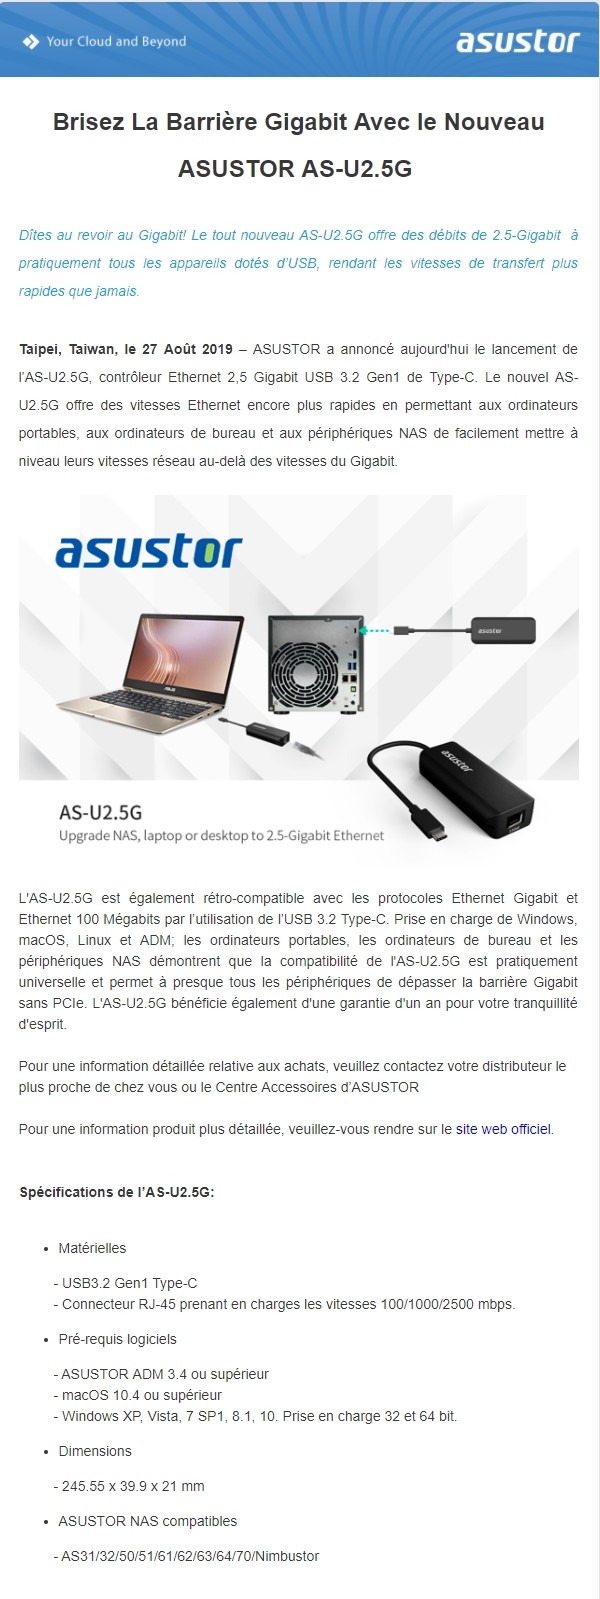 ASUSTOR_AS-U2.5G.jpg